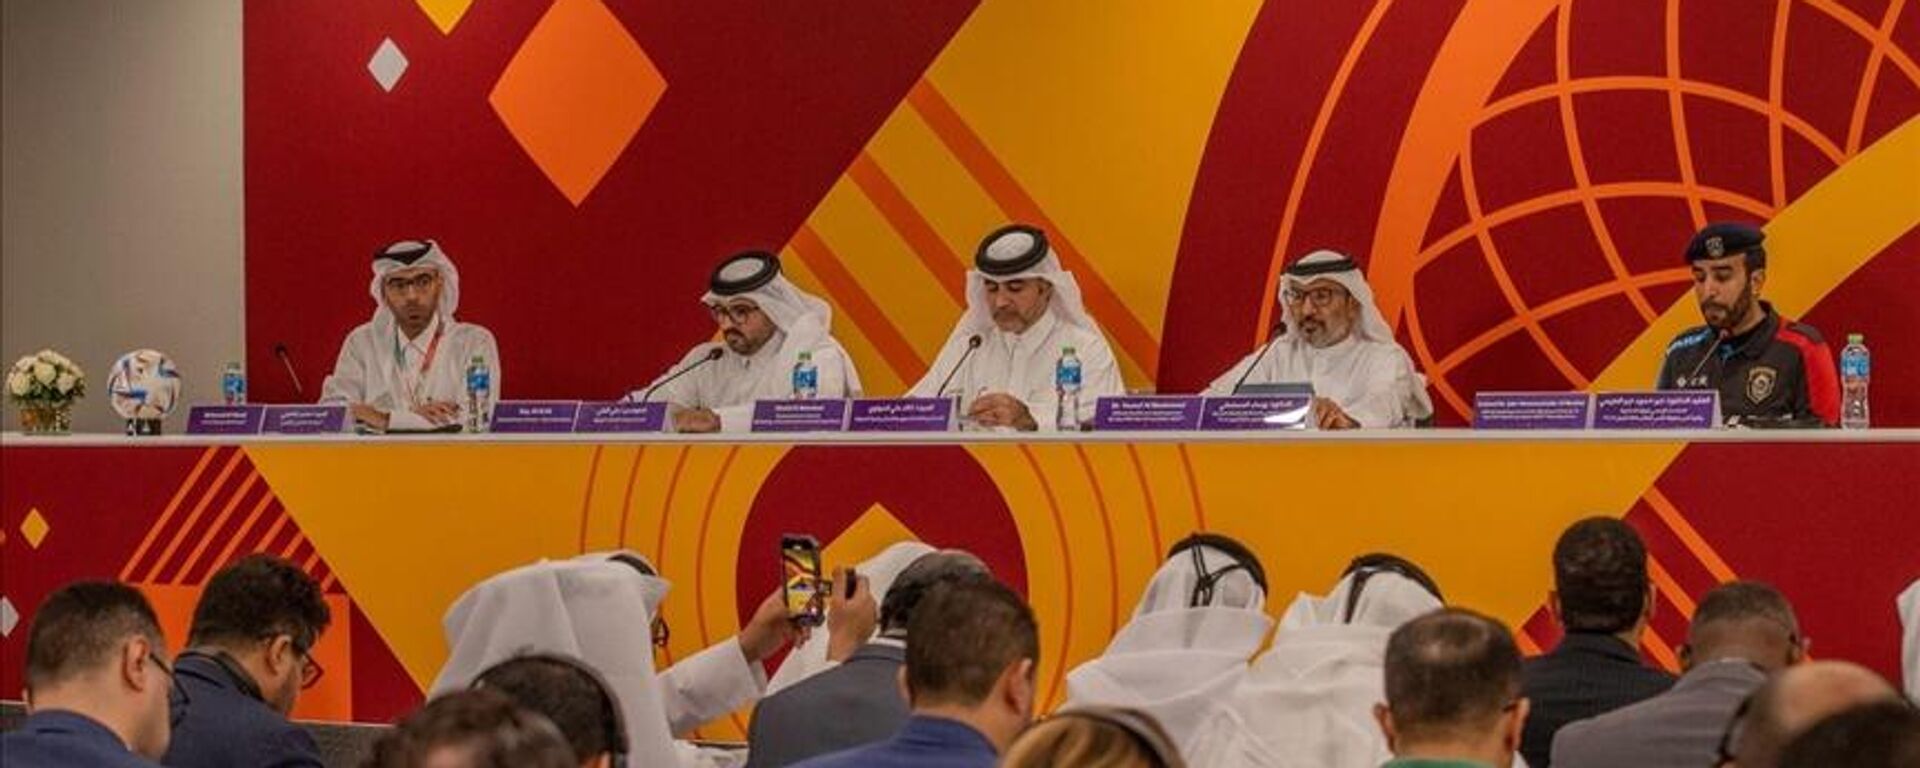 Katar, 2022 FIFA Dünya Kupası'na günler kala ev sahibi ülke olarak gerekli tüm güvenlik hazırlıklarının tamamlandığını duyurdu. - Sputnik Türkiye, 1920, 04.11.2022